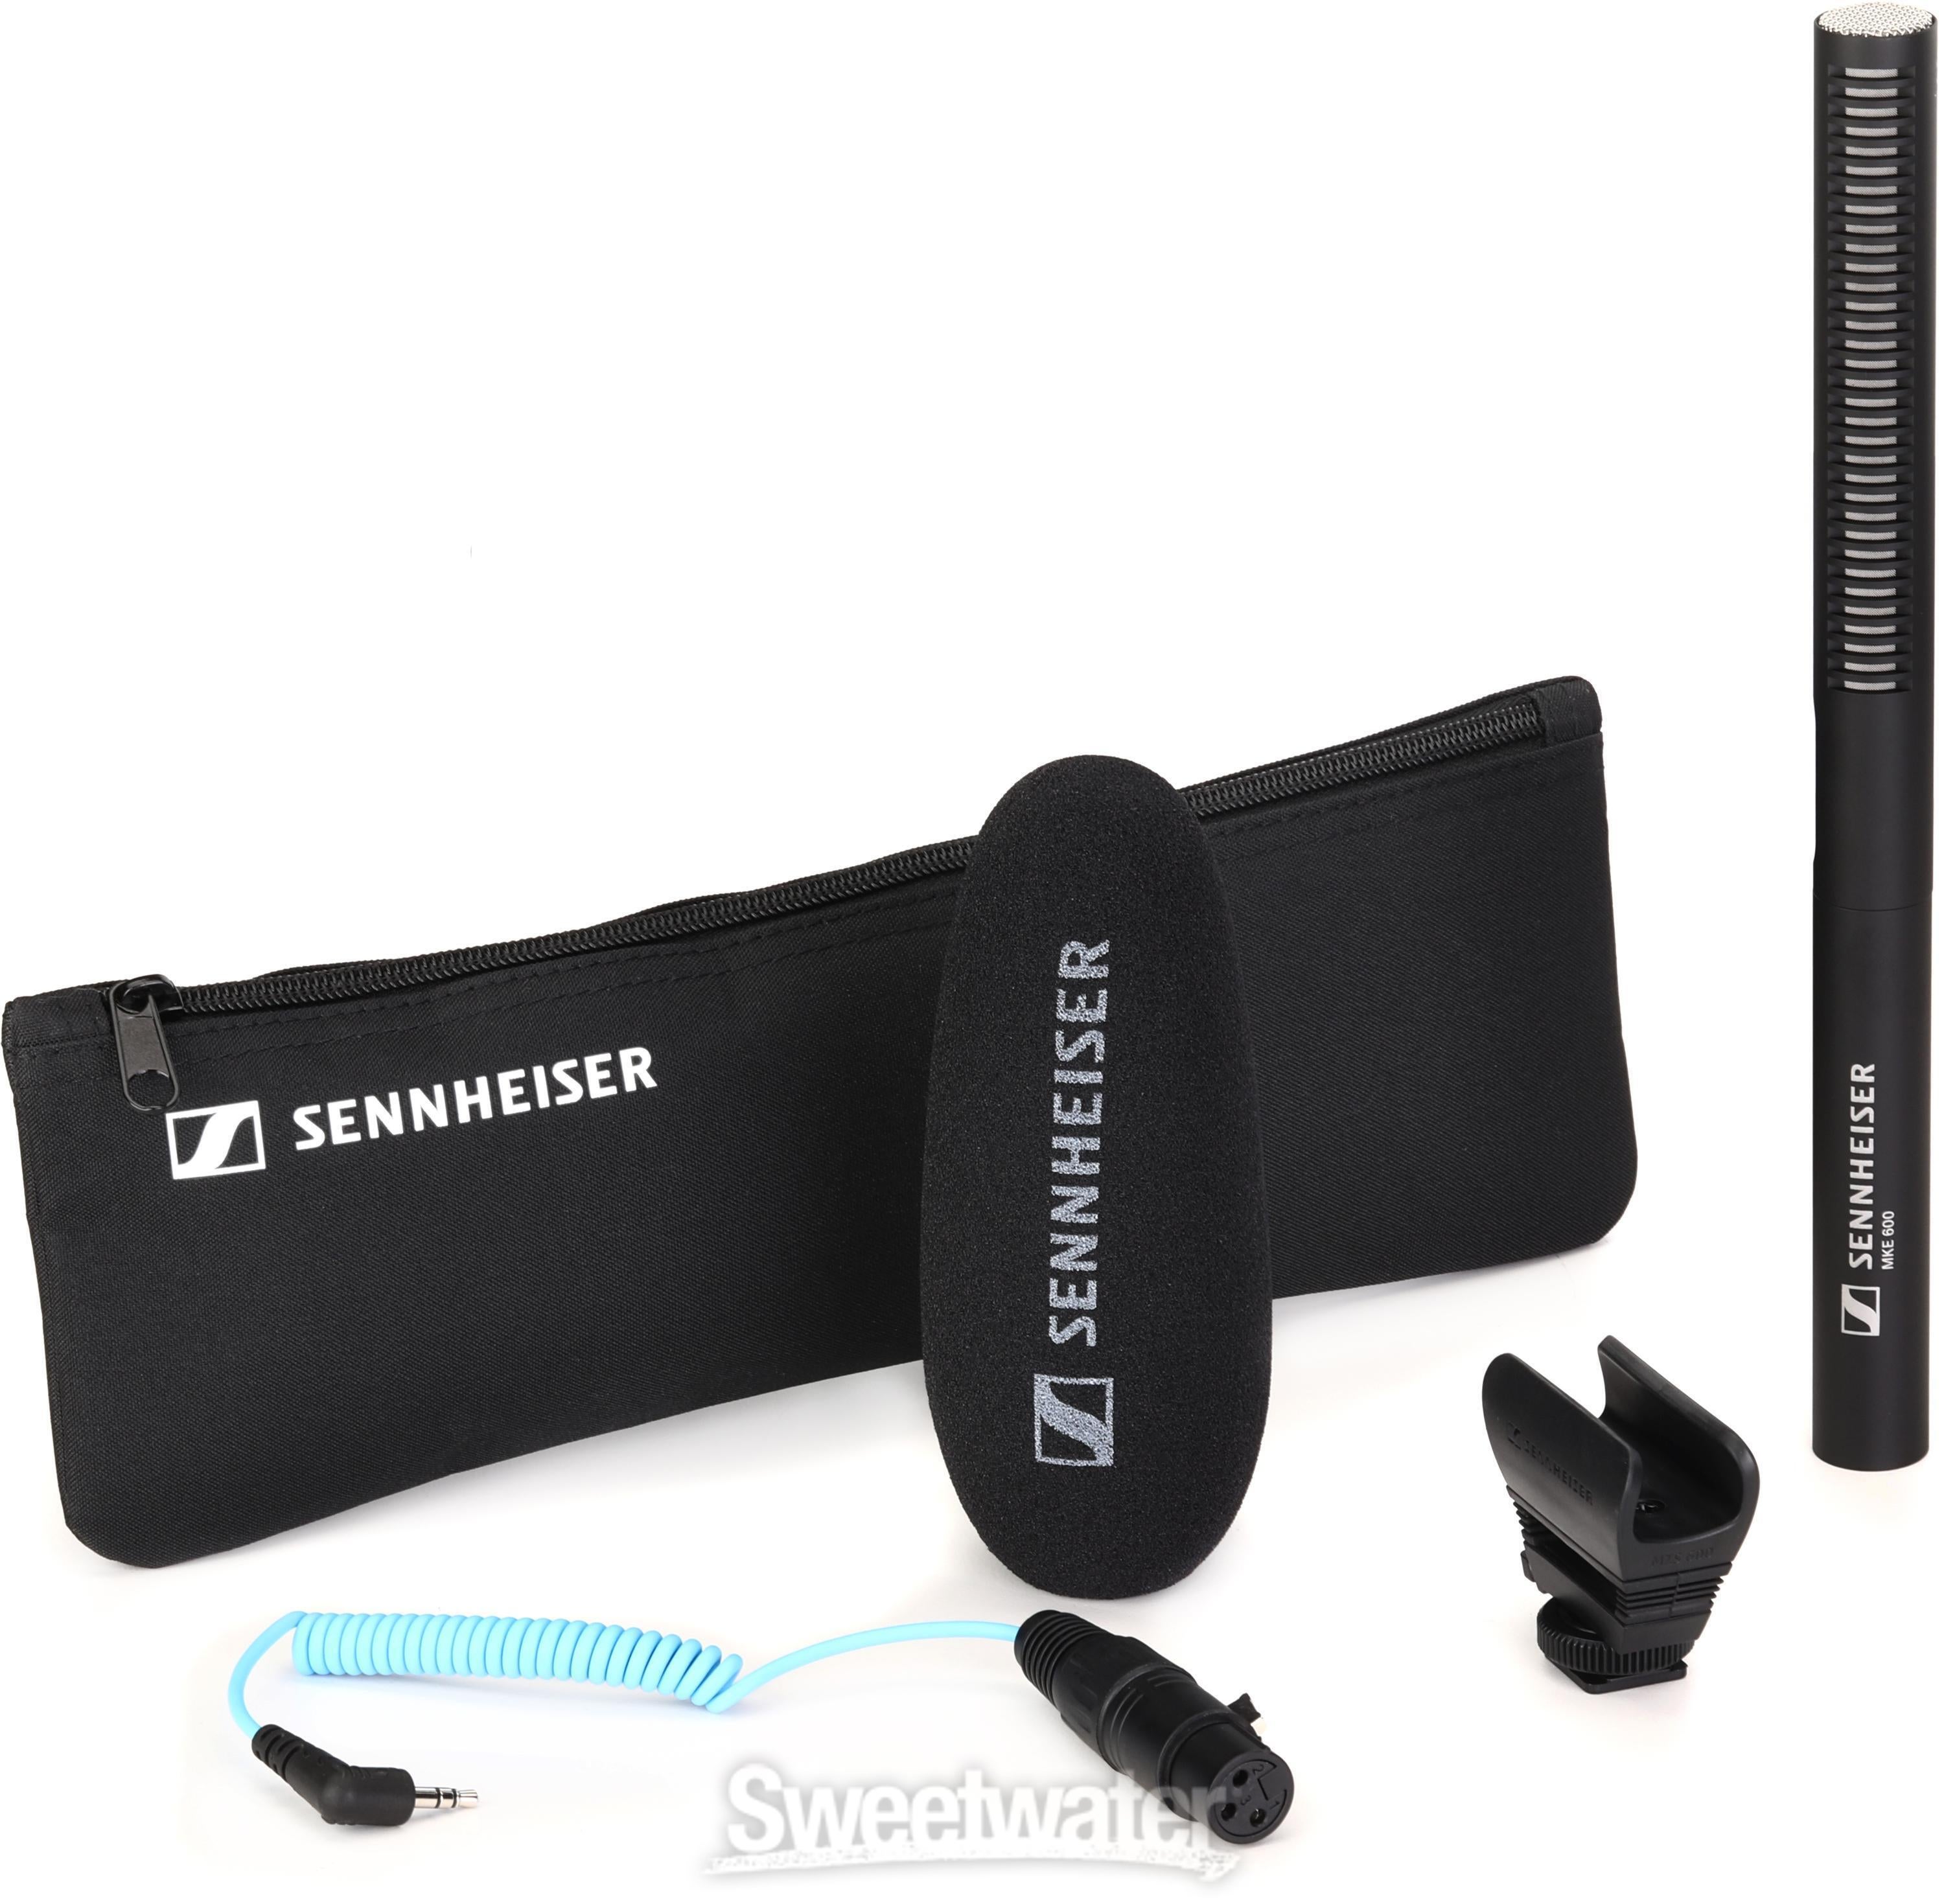 Sennheiser MKE 600 Shotgun Condenser Microphone | Sweetwater